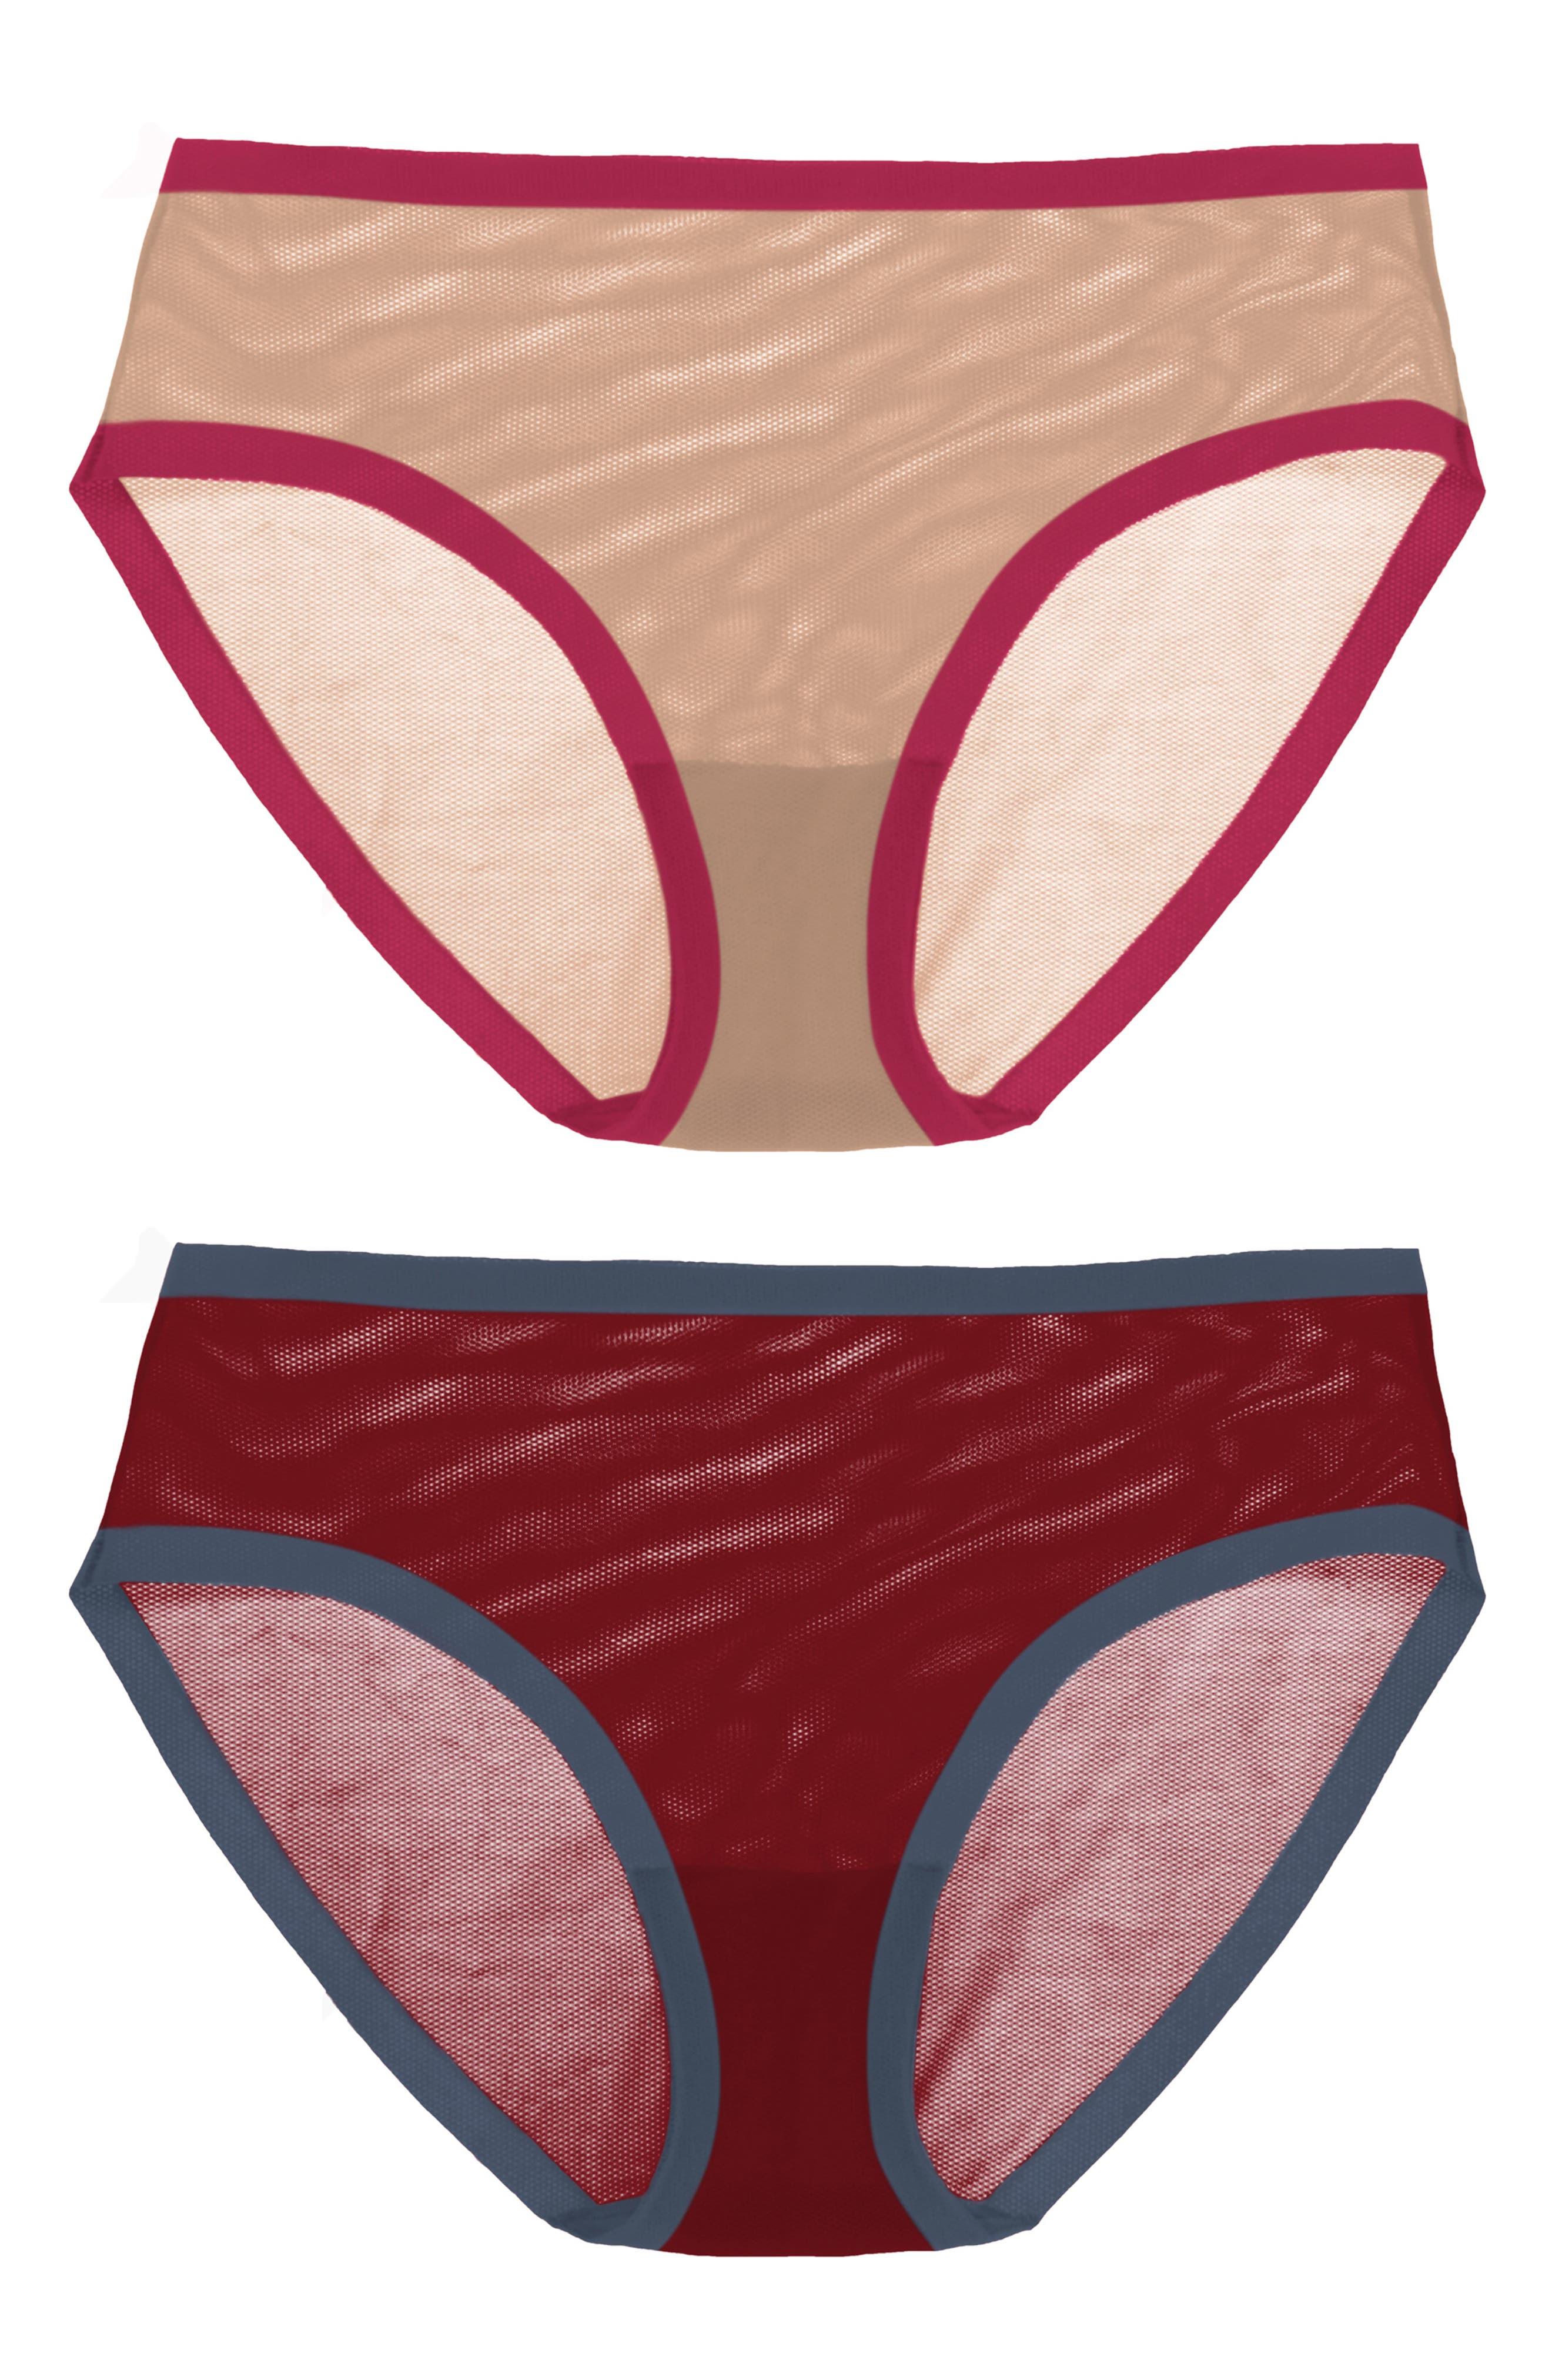 EBY 2-pack Sheer Panties in Red